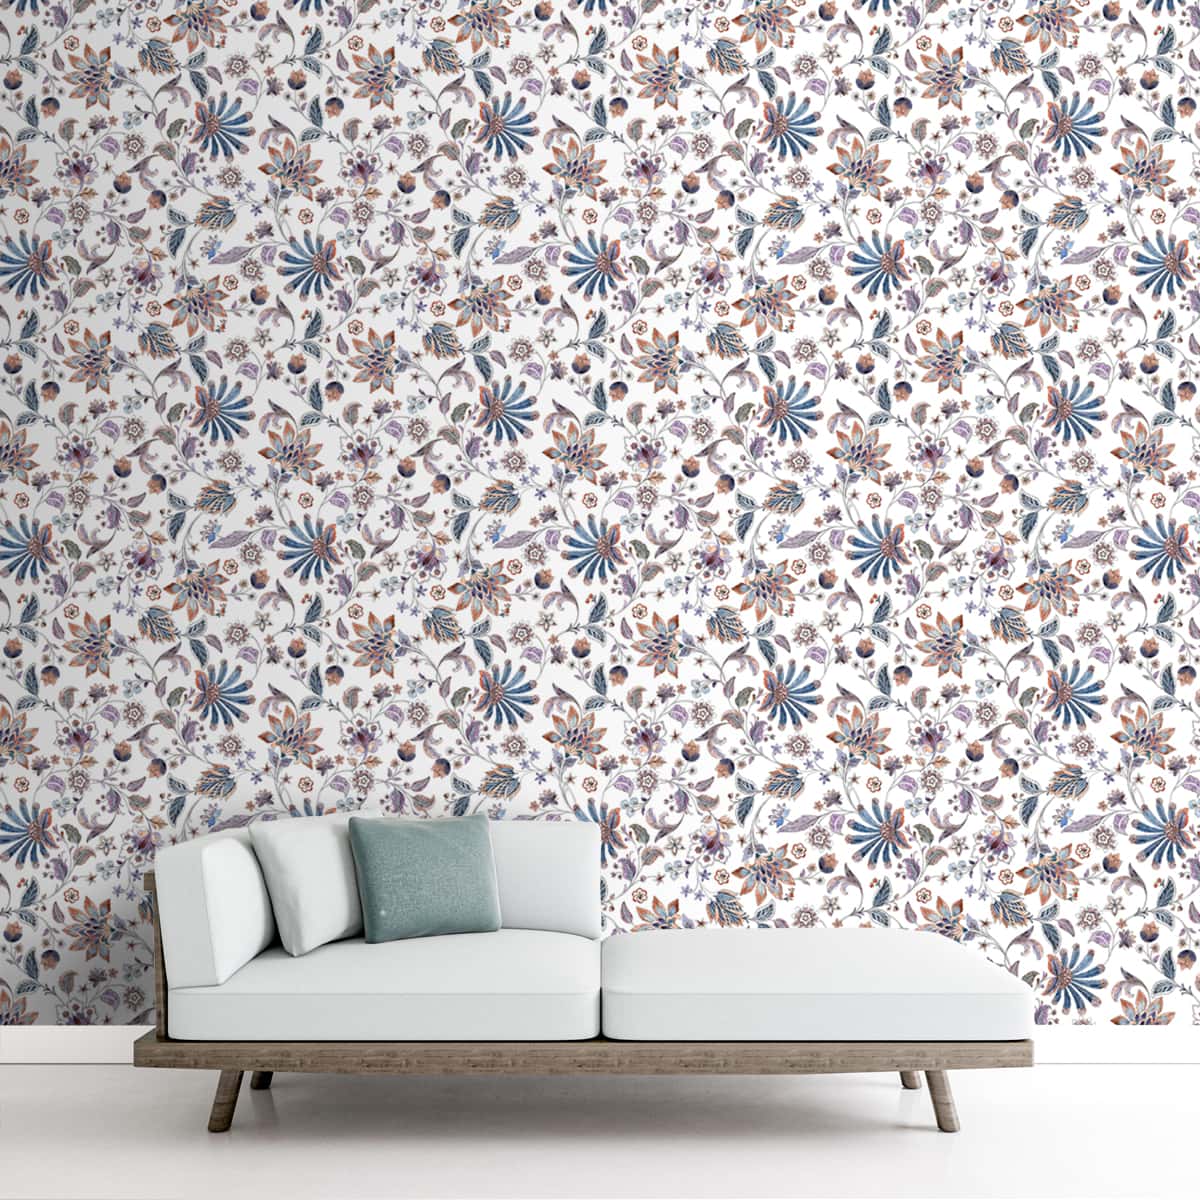 Vibrant Floral Wallpaper, Repeat Patten